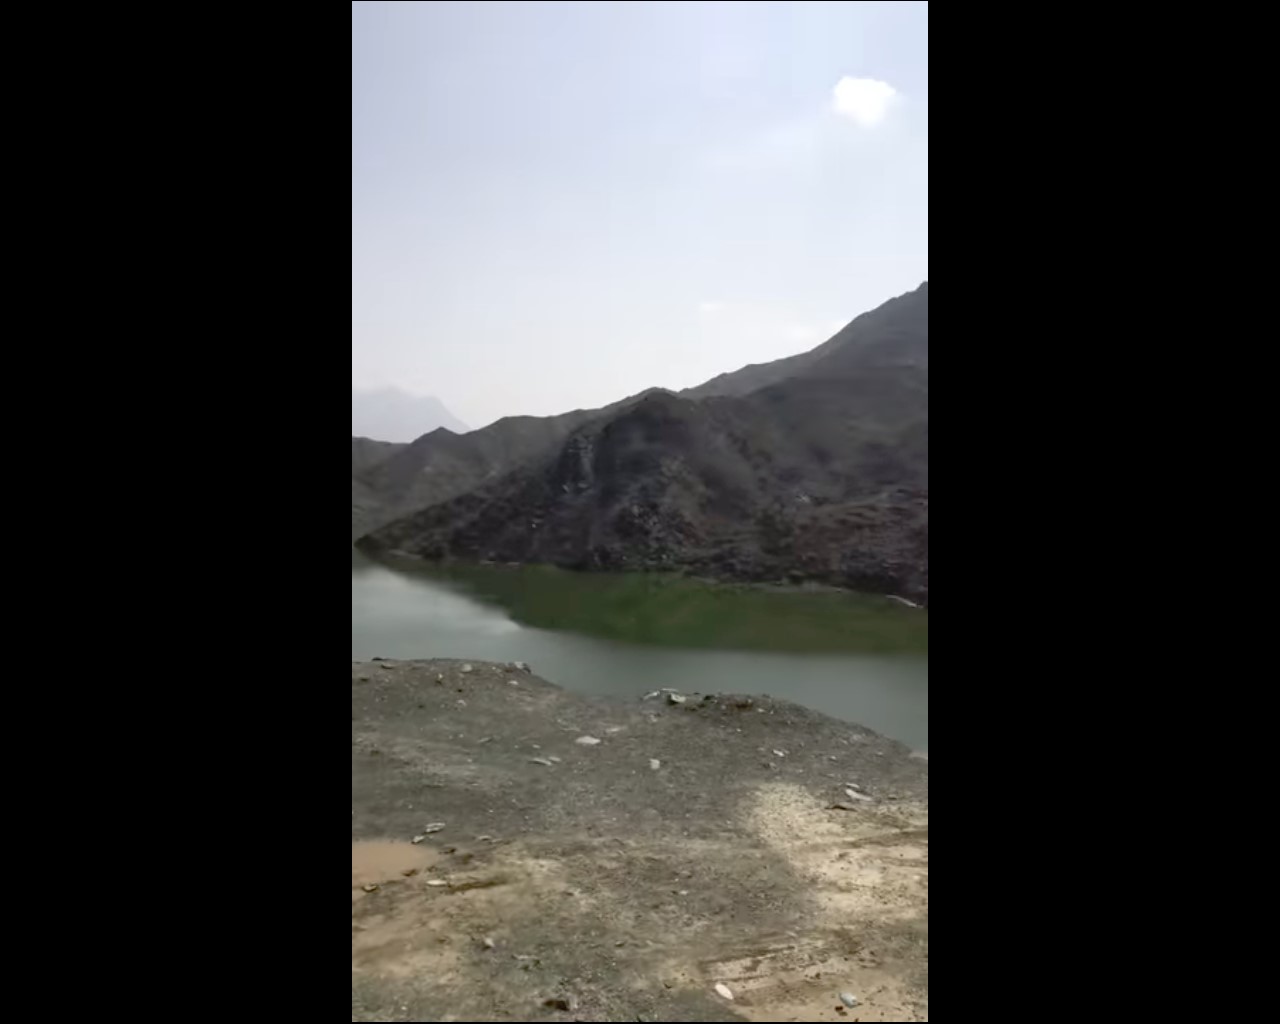 “المواطن” ترصد خطرًا كبيرًا يهدد أهالي وزوار القنفذة في سد وادي قنونا